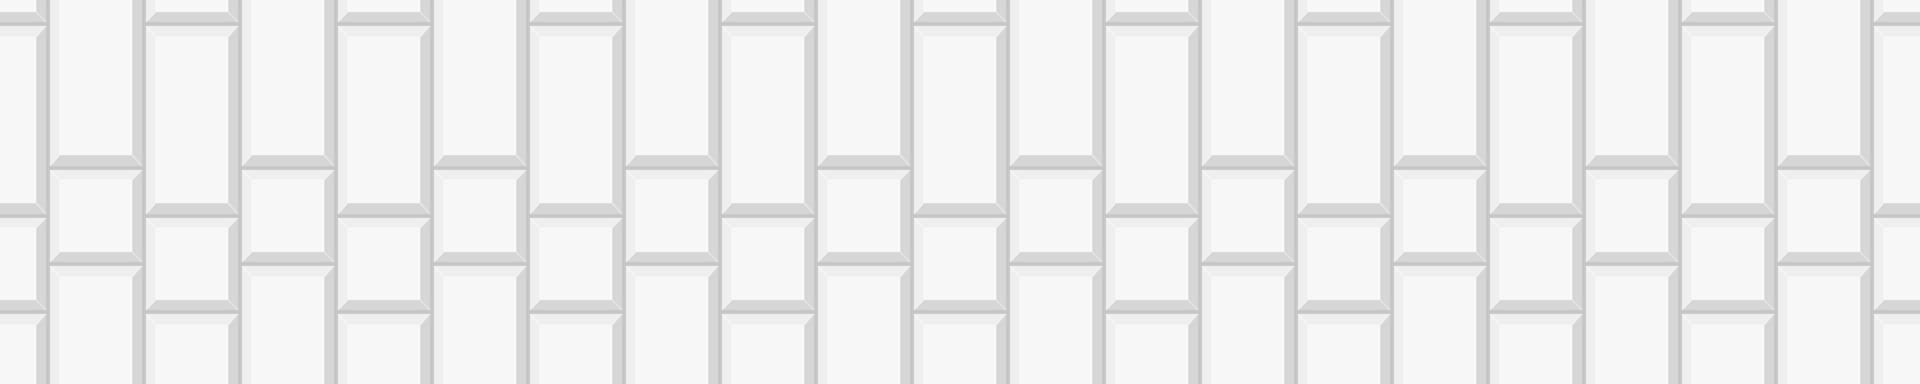 blanco vertical rectángulo y cuadrado loseta textura. cerámico o ladrillo pared horizontal antecedentes. cocina protector contra salpicaduras o baño piso sin costura modelo. fachada decoración diseño vector